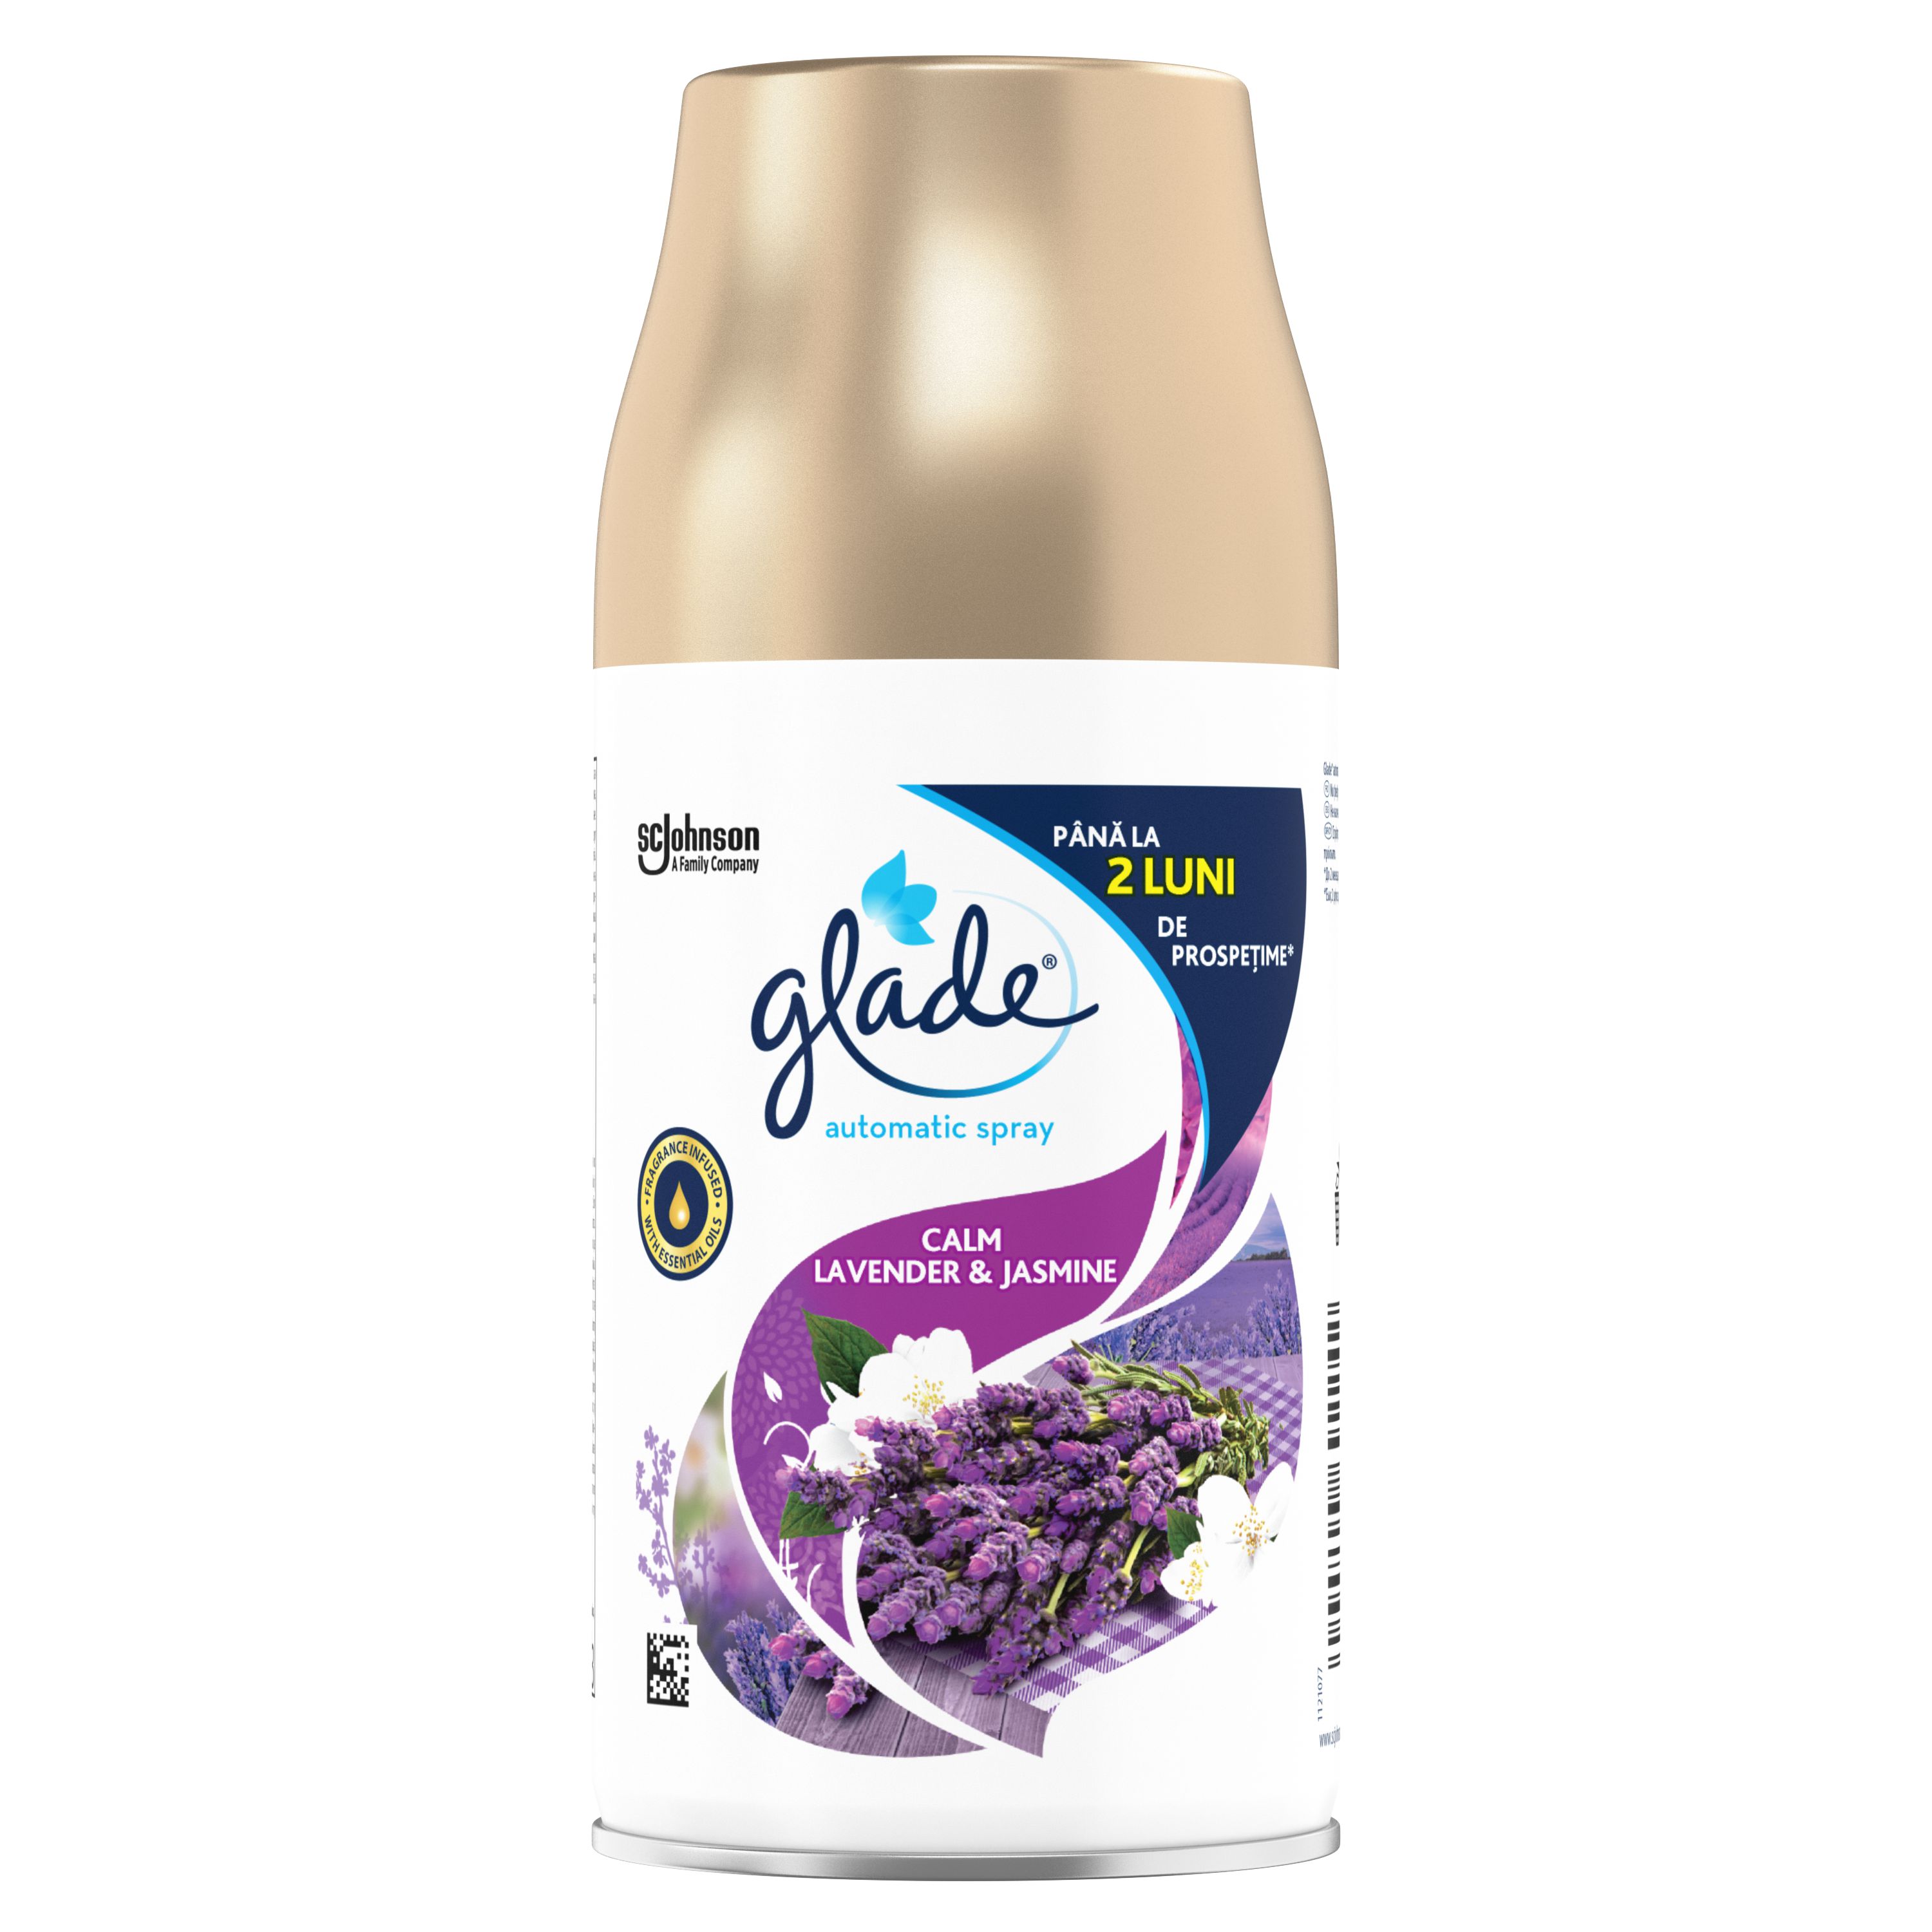 Glade® Automatic Spray Calm Lavender & Jasmine